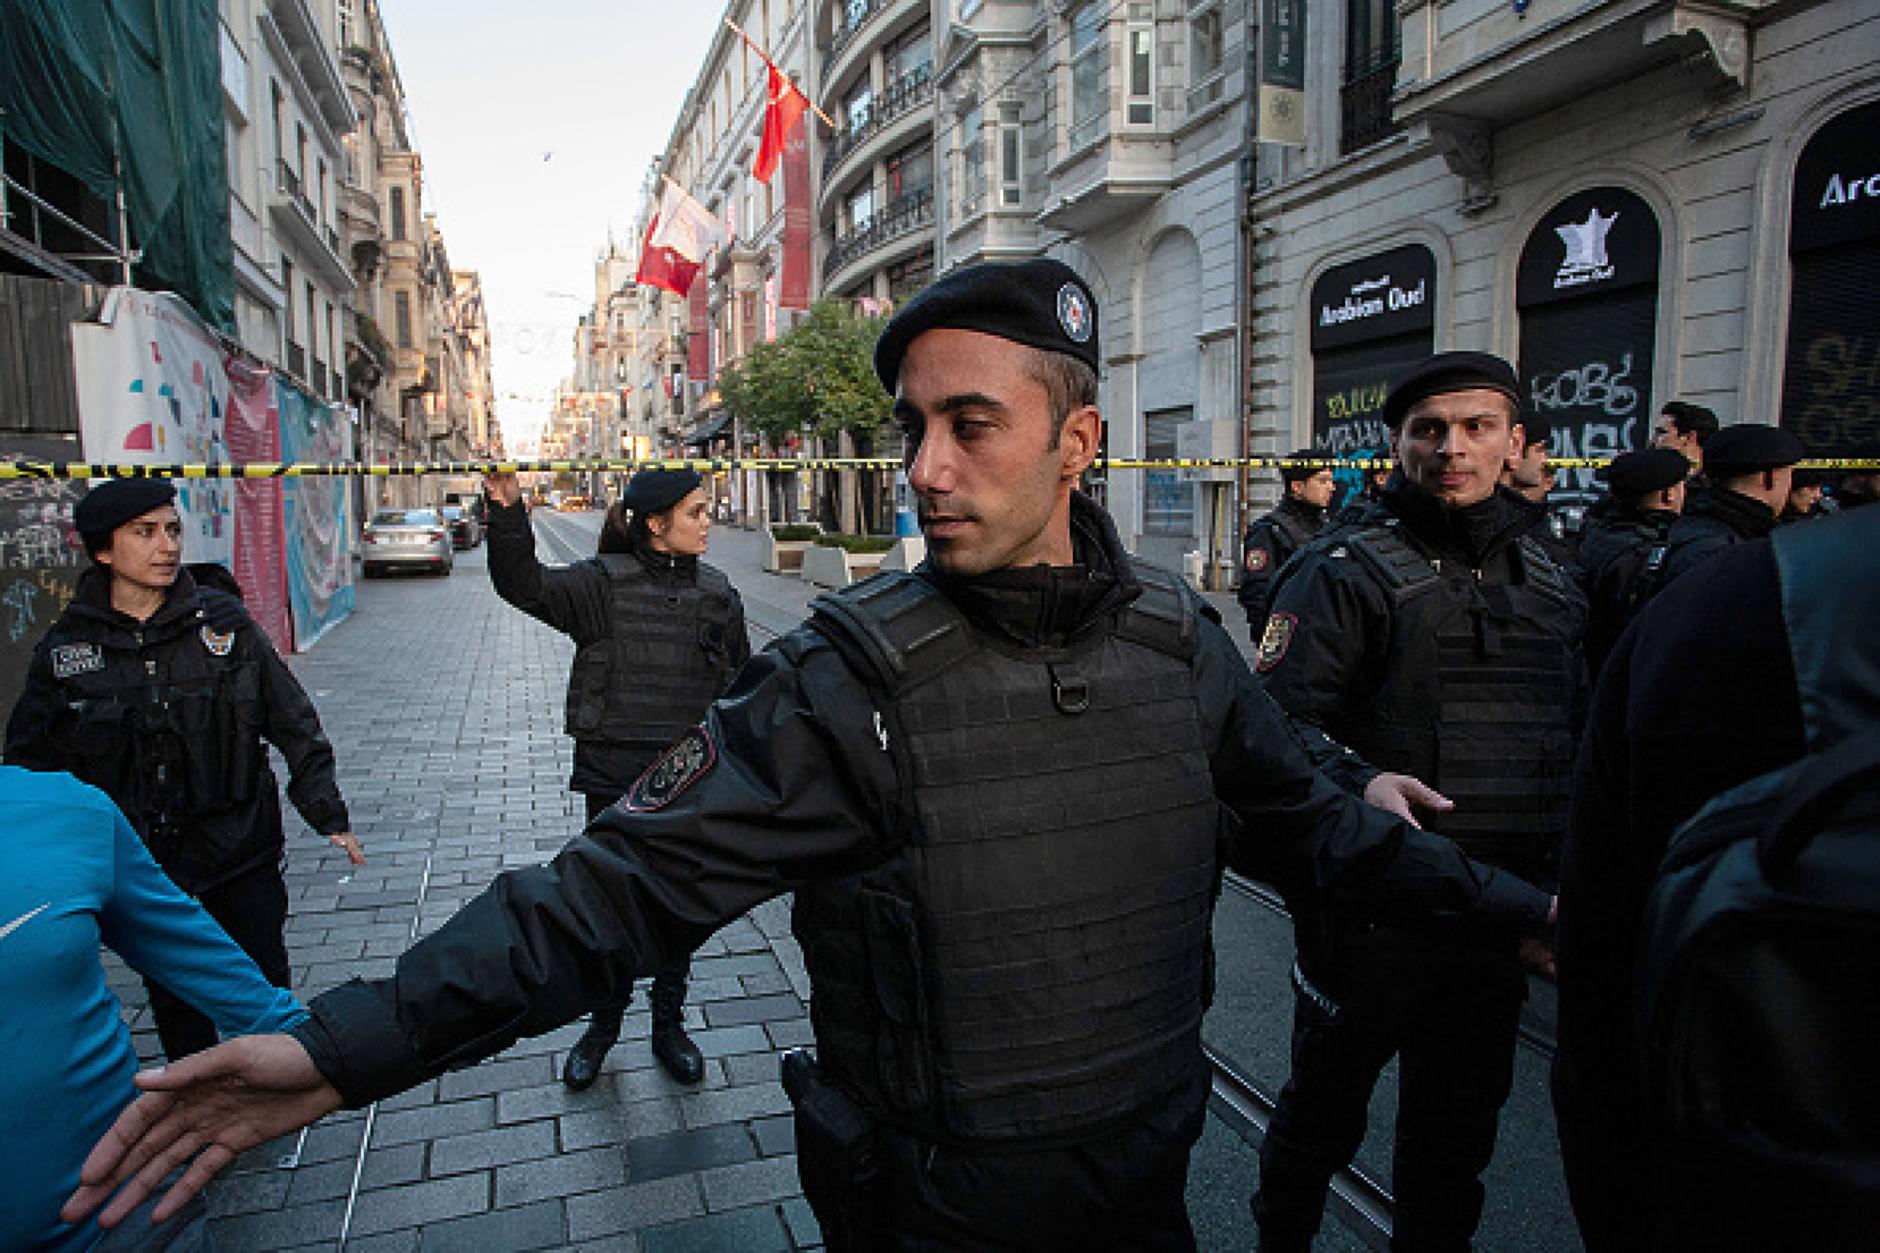 Турската полиция хвана над 1000 издирвани бегълци от закона